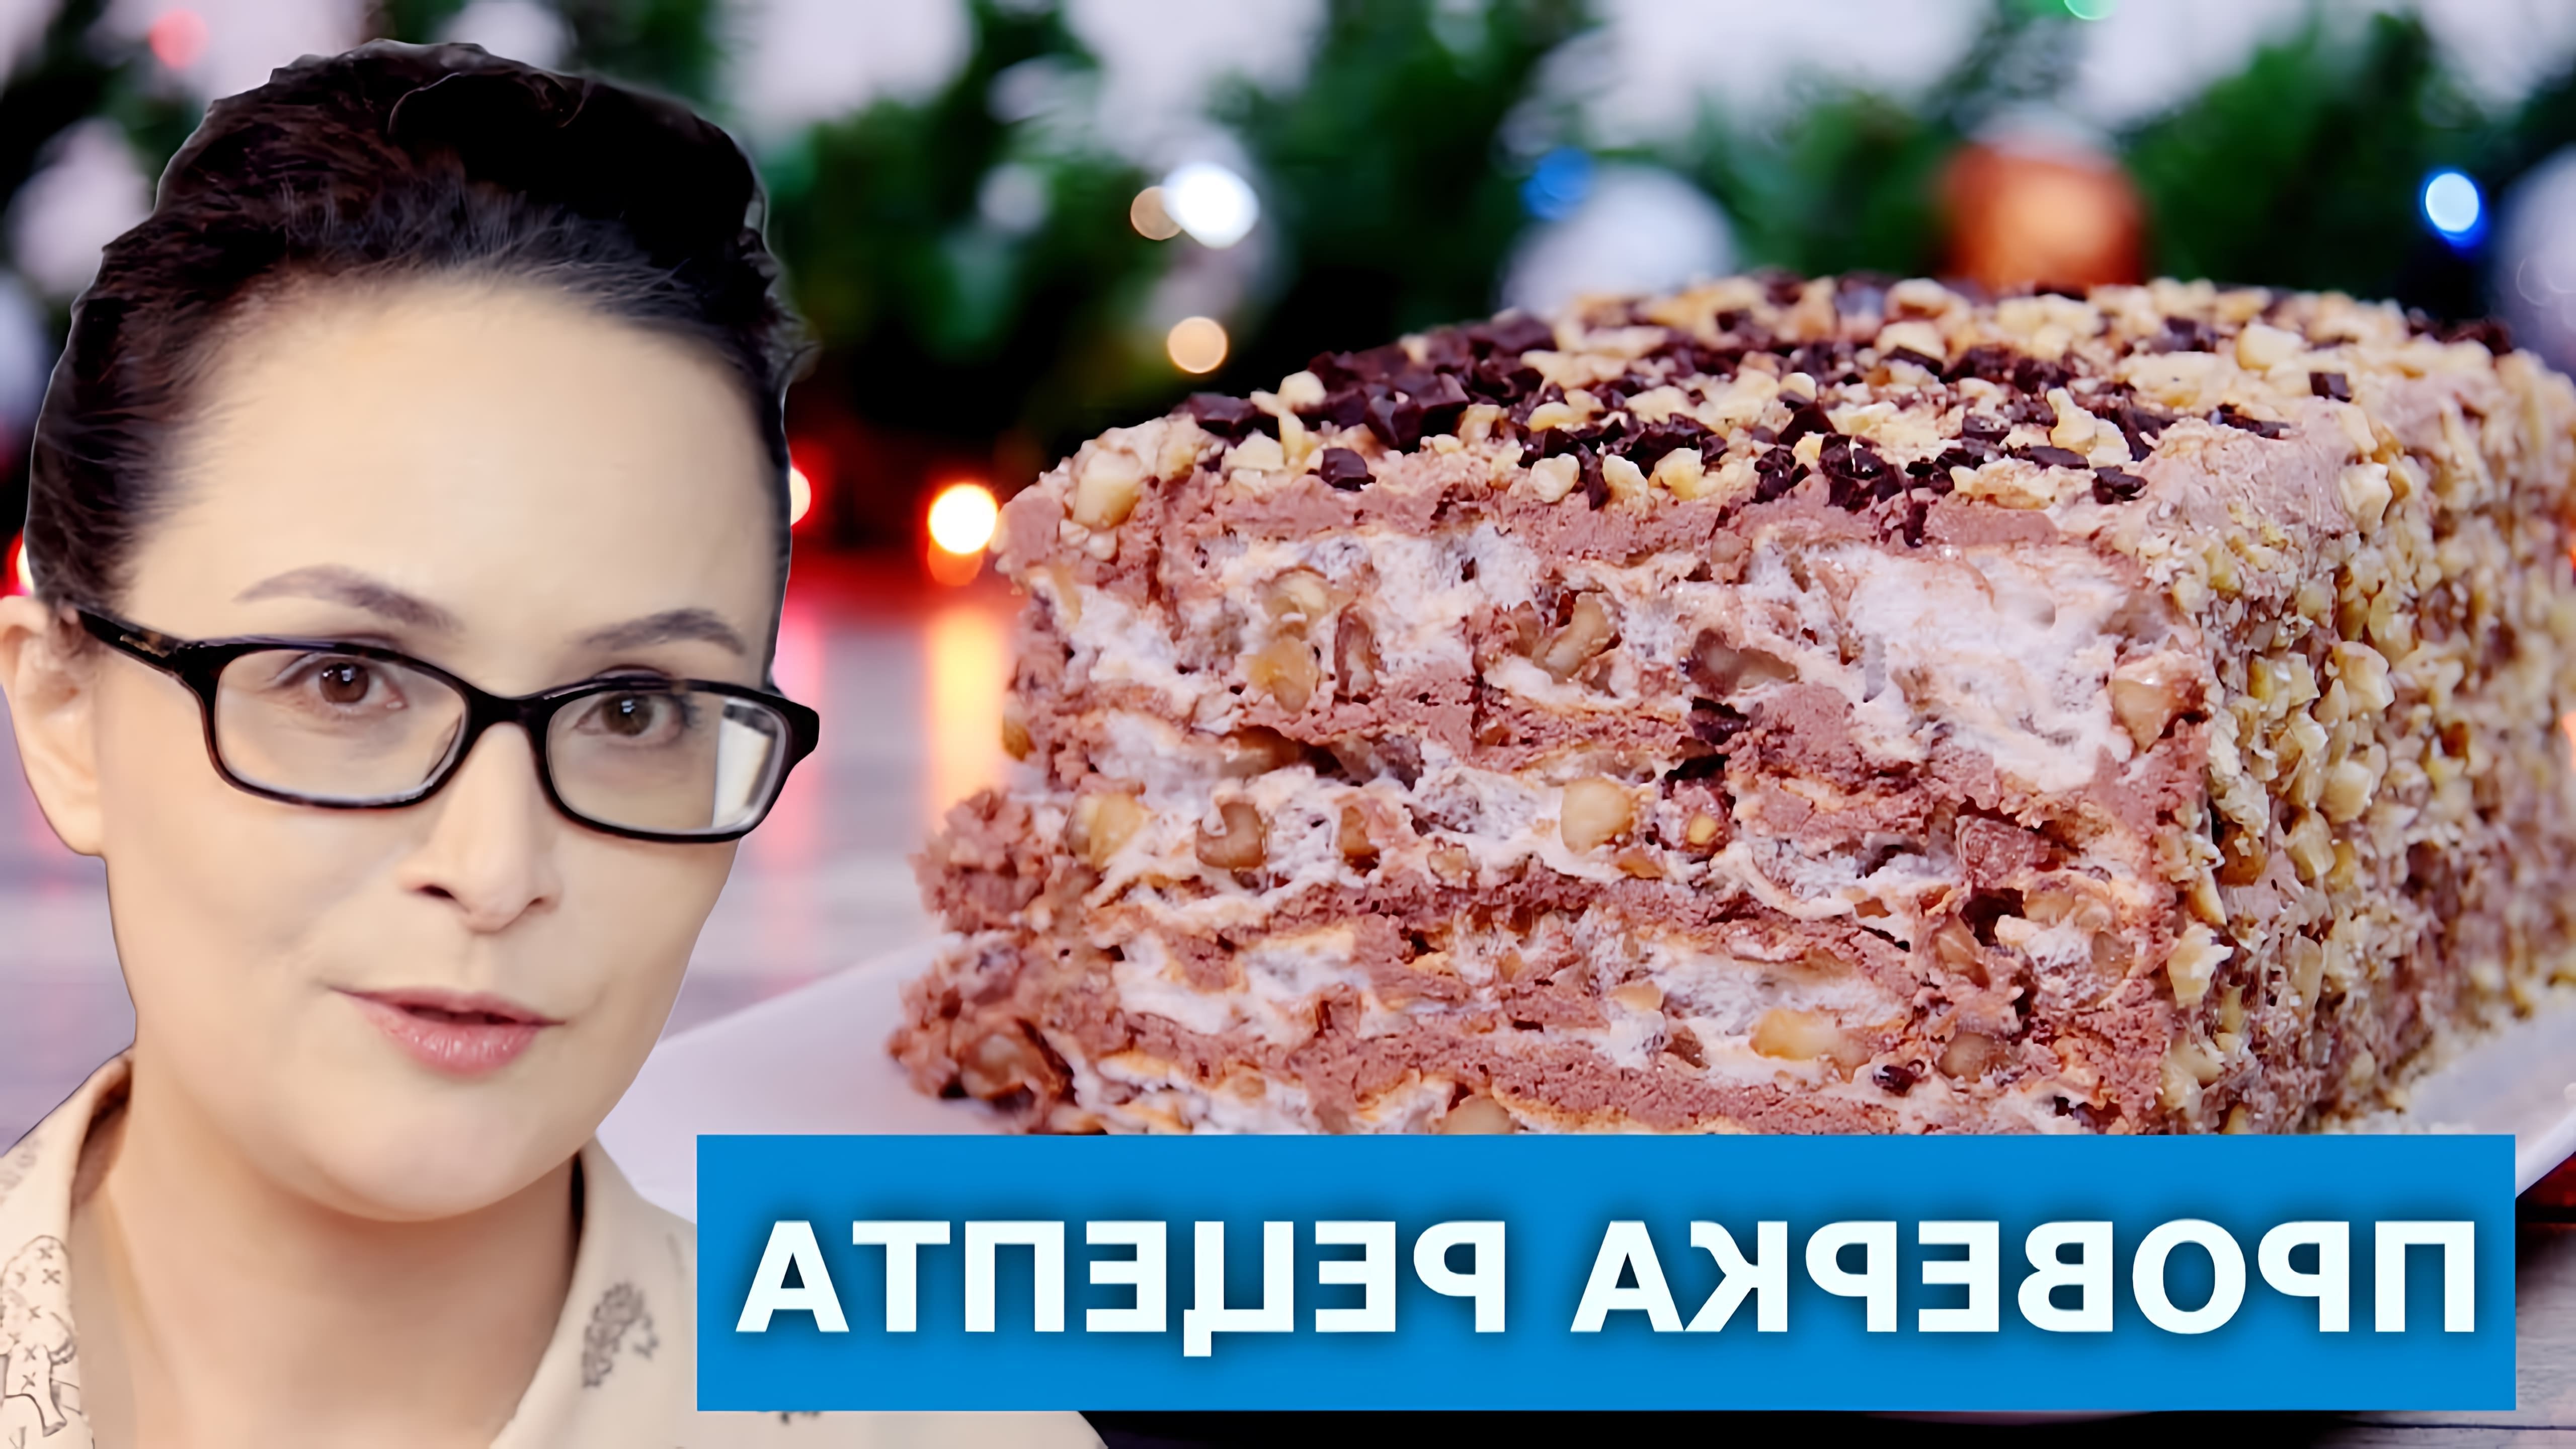 В этом видео мы проверяем рецепт королевского торта без муки, который идеально подходит для новогоднего стола